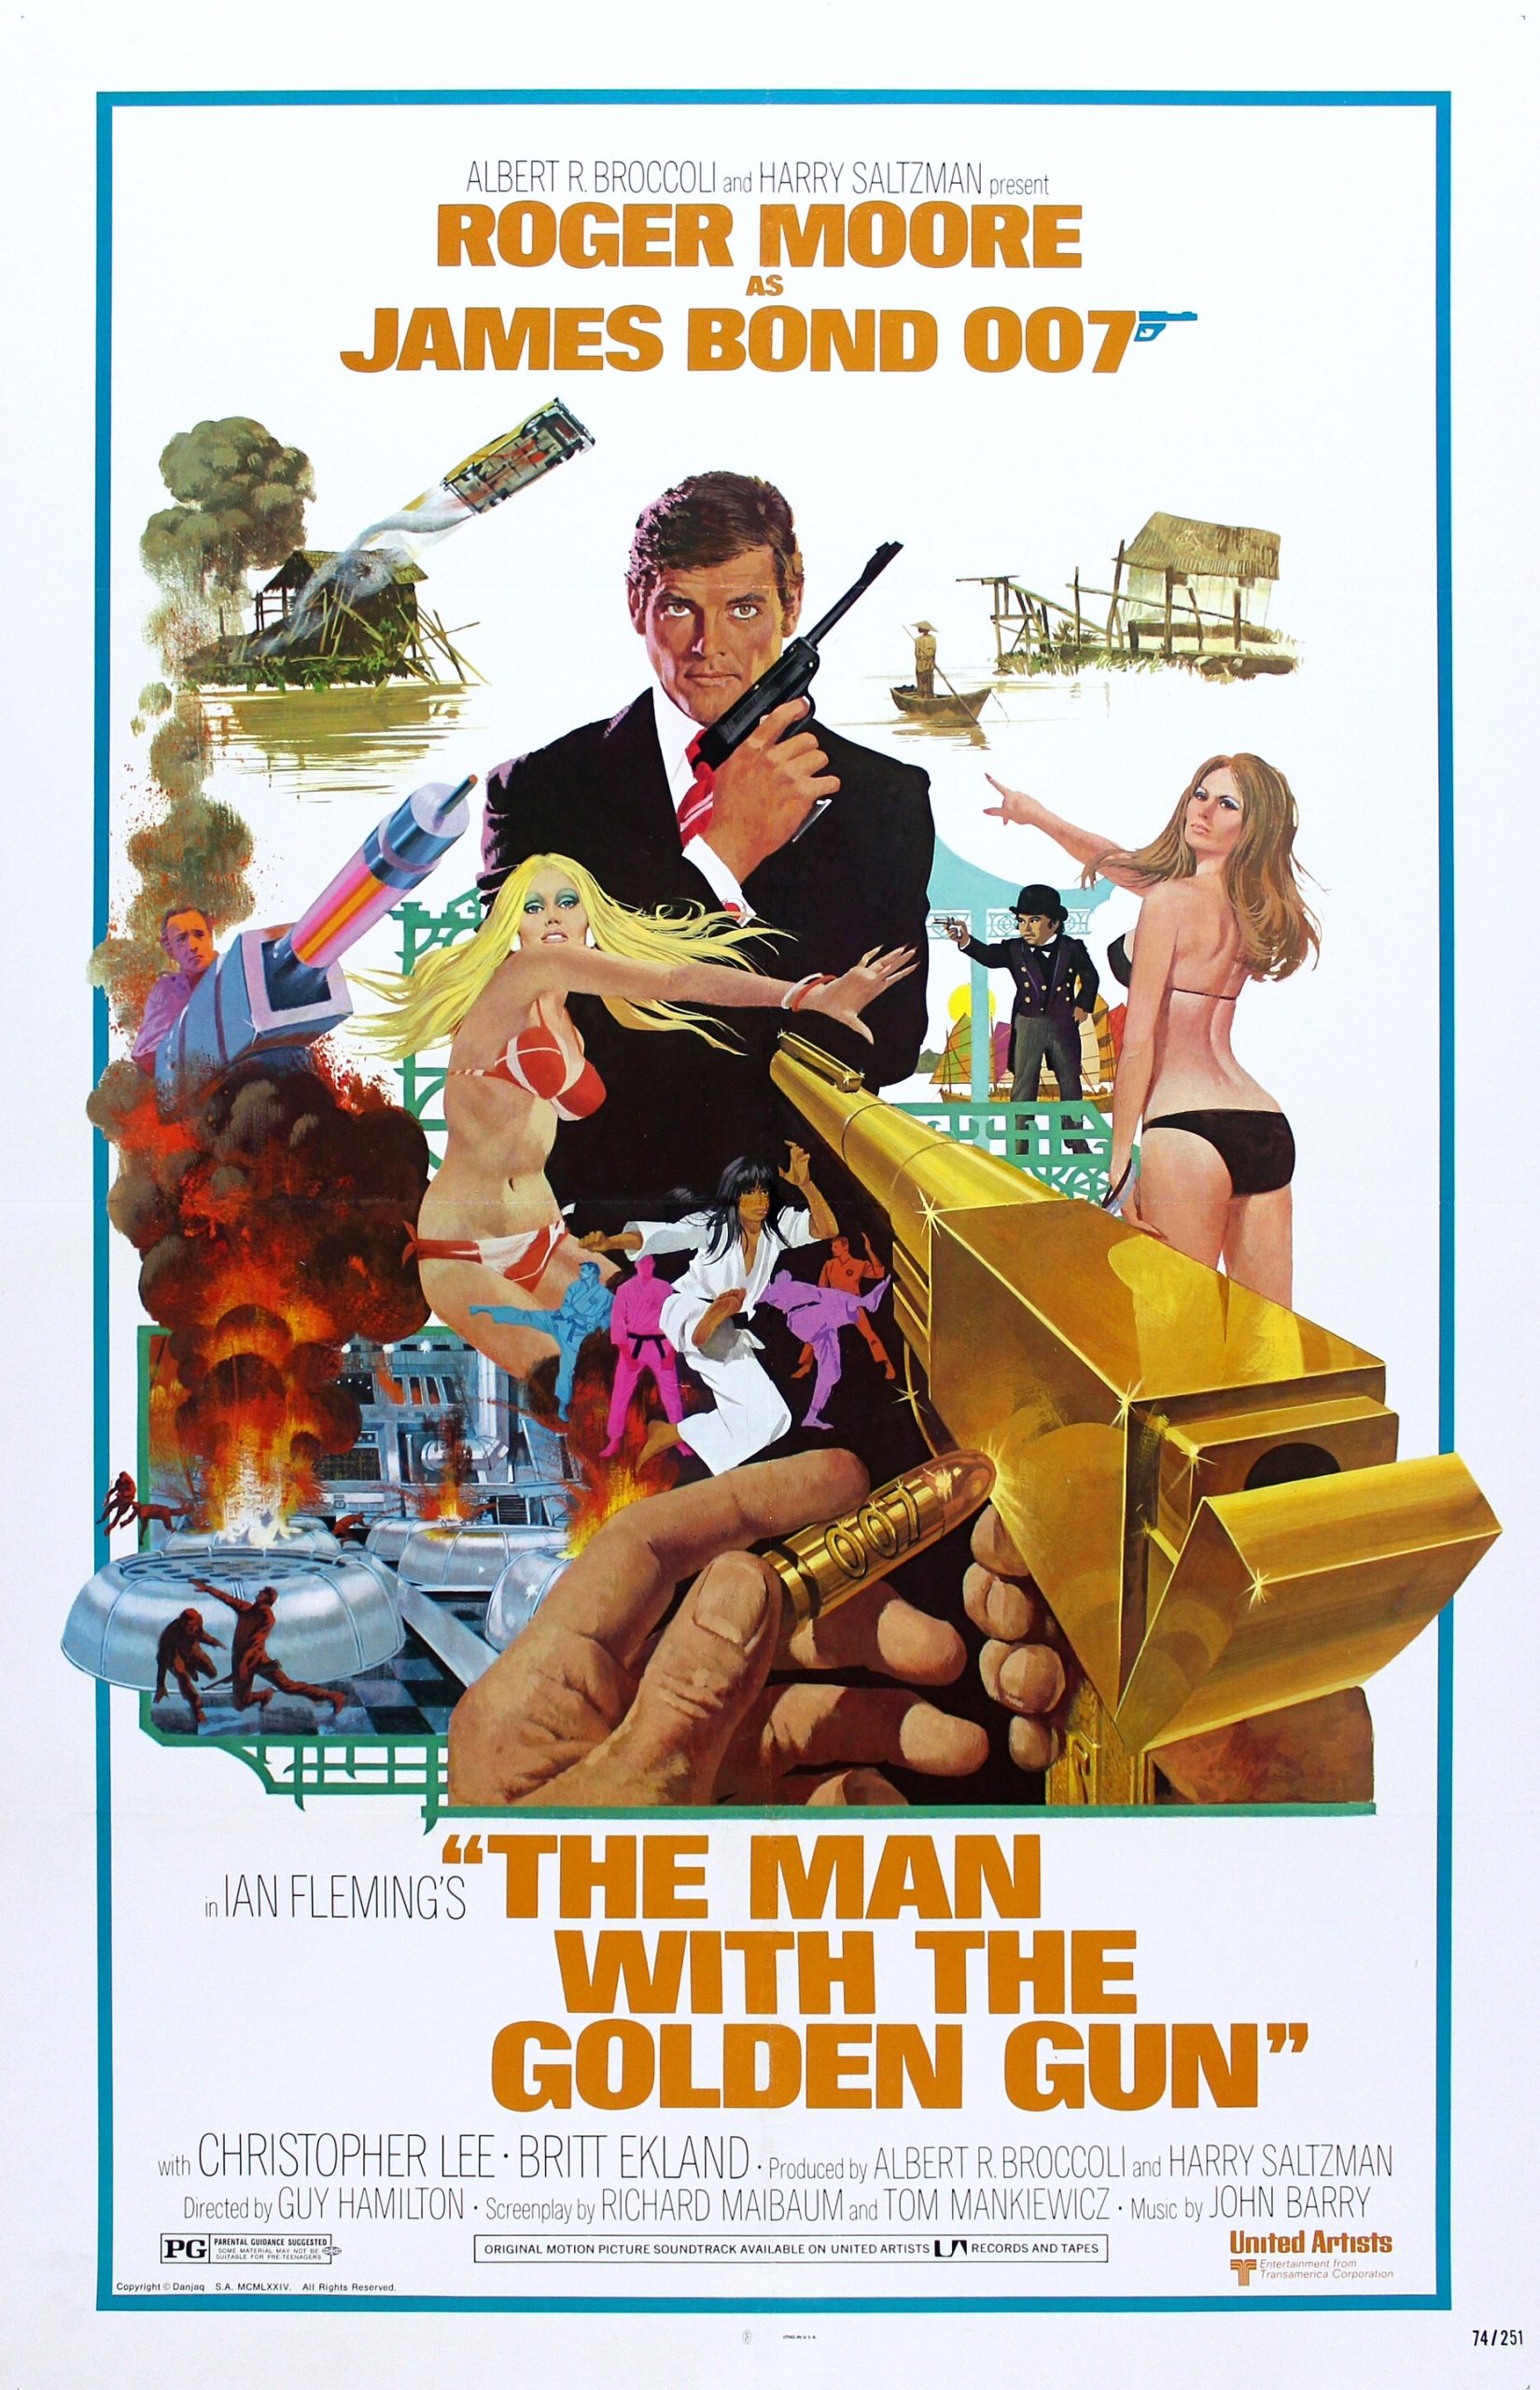 ดูหนังออนไลน์ฟรี James Bond 007 The Man With The Golden Gun (1974) เจมส์ บอนด์ 007 ภาค 9: เพชฌฆาตปืนทอง หนังเต็มเรื่อง หนังมาสเตอร์ ดูหนังHD ดูหนังออนไลน์ ดูหนังใหม่